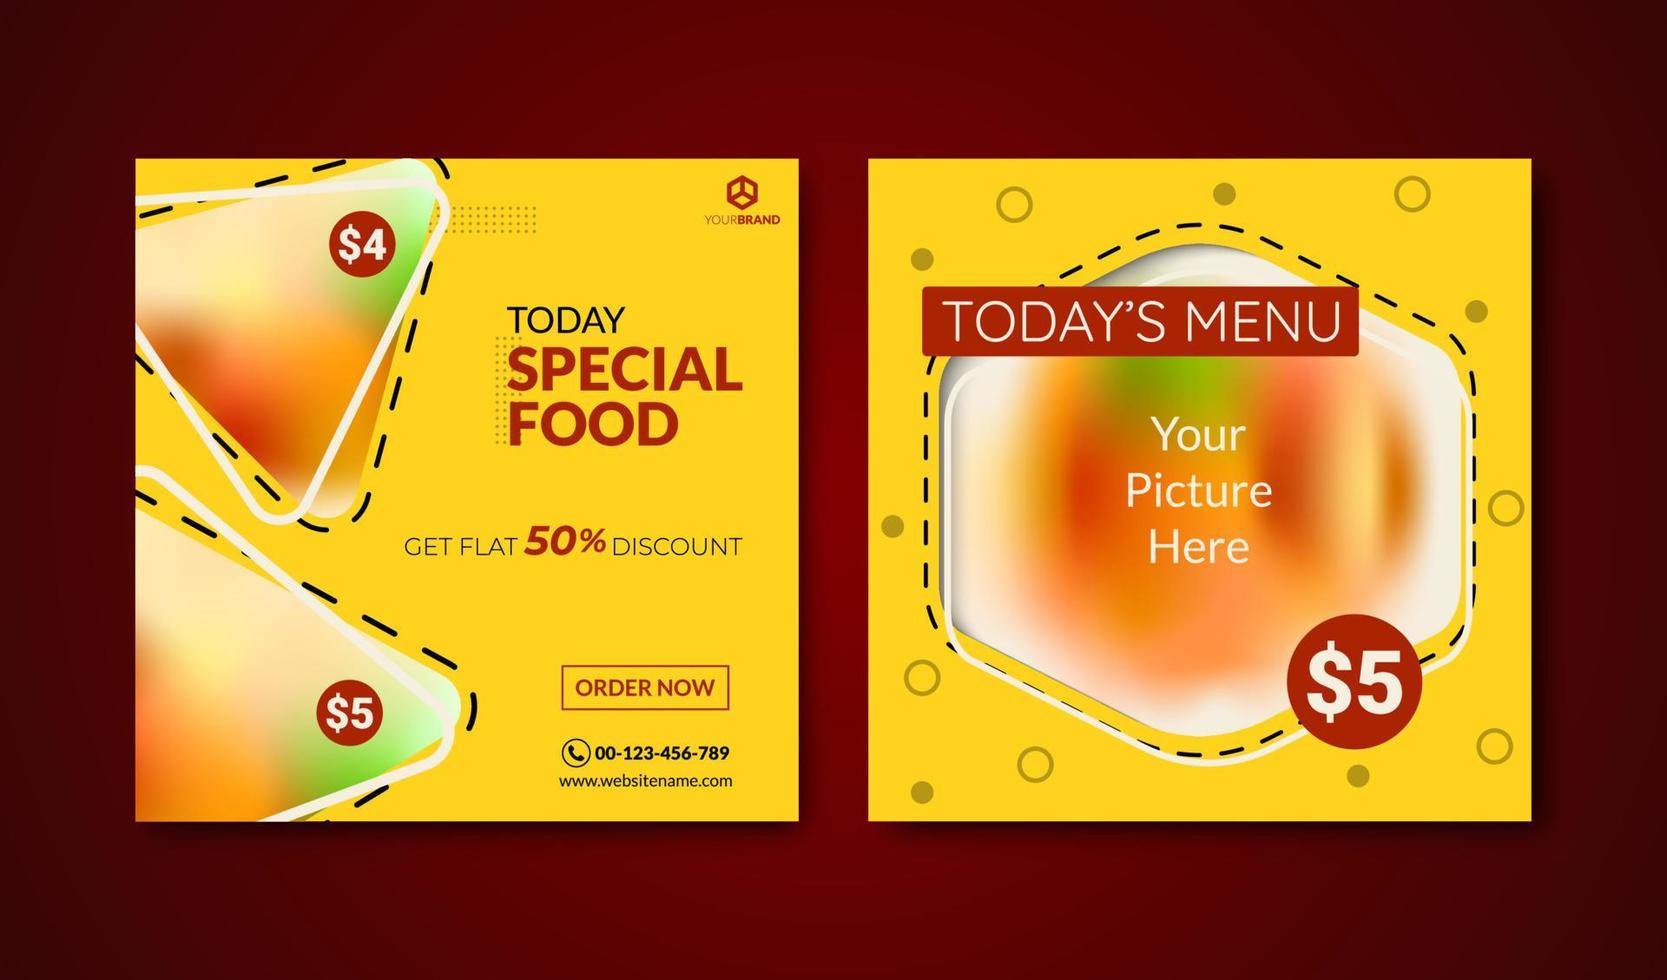 bannière de publication sur les réseaux sociaux pour la promotion des aliments adaptée à la promotion des bannières publicitaires, du Web et du contenu alimentaire. modèle de conception à la mode vecteur